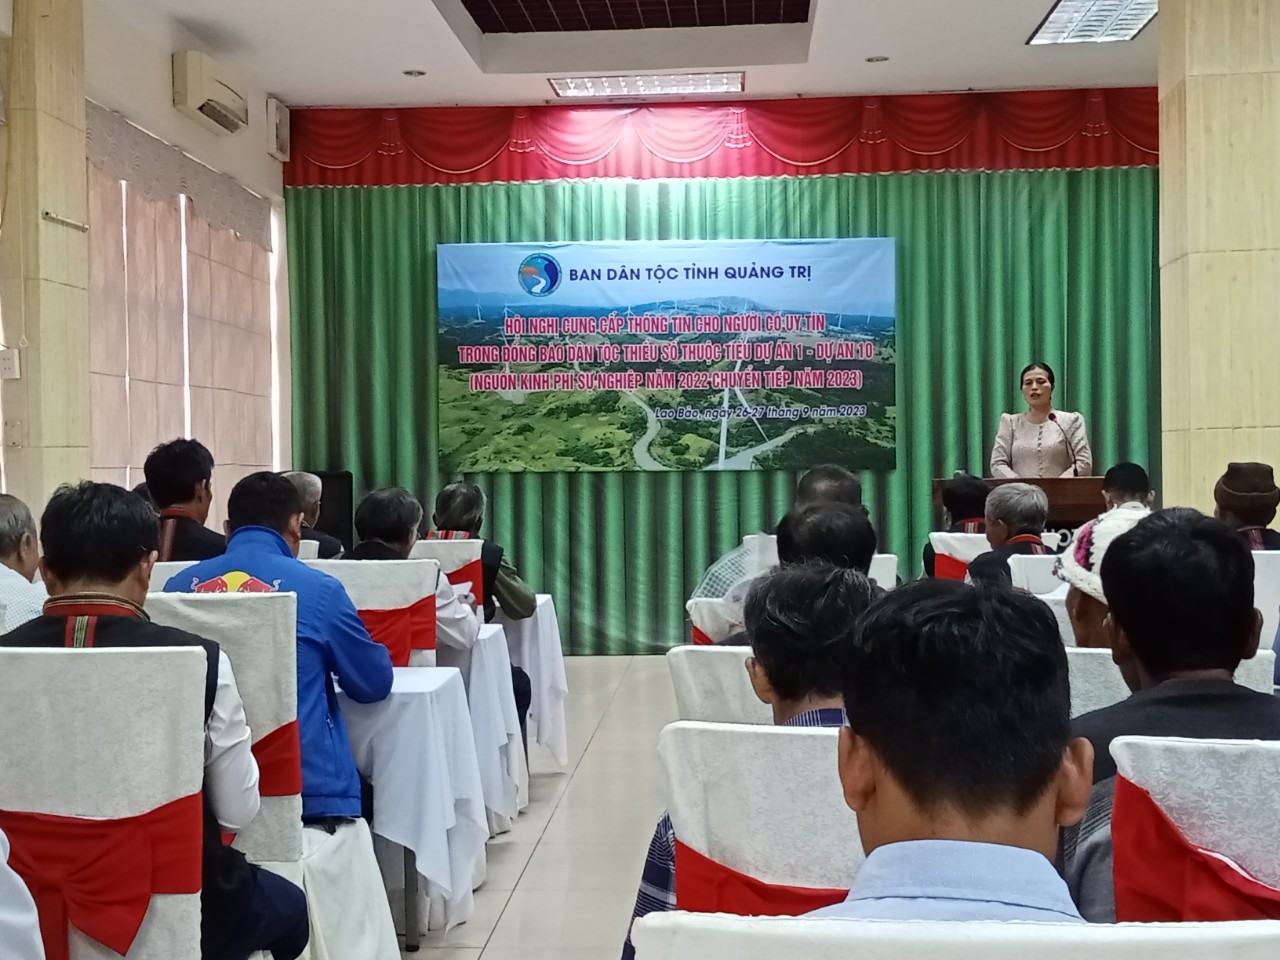 Bà Hồ Thị Minh, Phó Trưởng ban Dân tộc trao đổi với các đại biểu Người có uy tín về tình hình vùng đồng bào DTTStỉnh Quảng Trị.